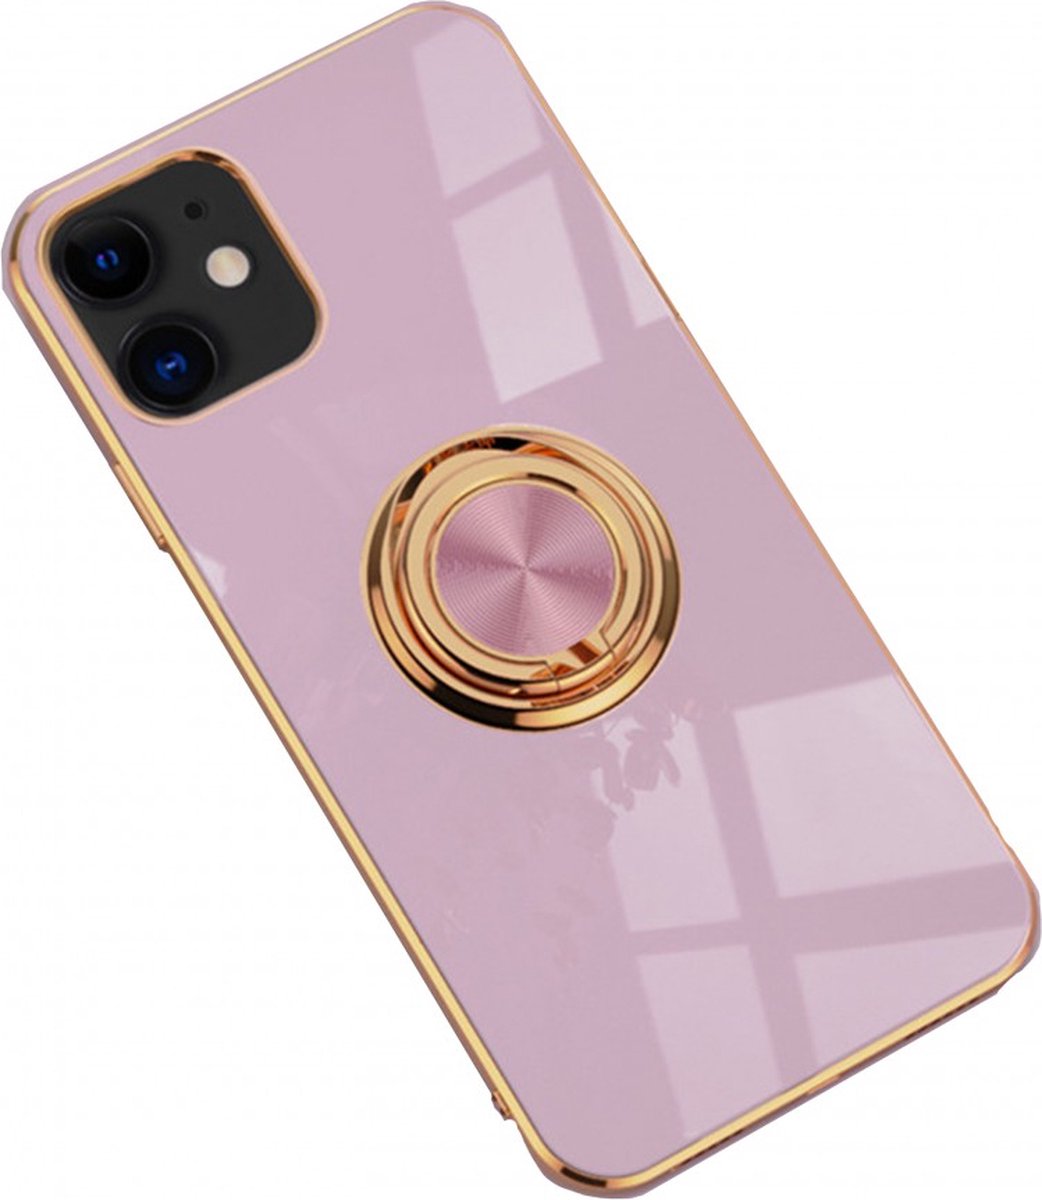 iPhone 13 hoesje met ring - Kickstand - iPhone - Goud detail - Handig - Hoesje met ring - 5 verschillende kleuren - zalm roze - Grijs/blauw - Donker groen - Zwart - Paars